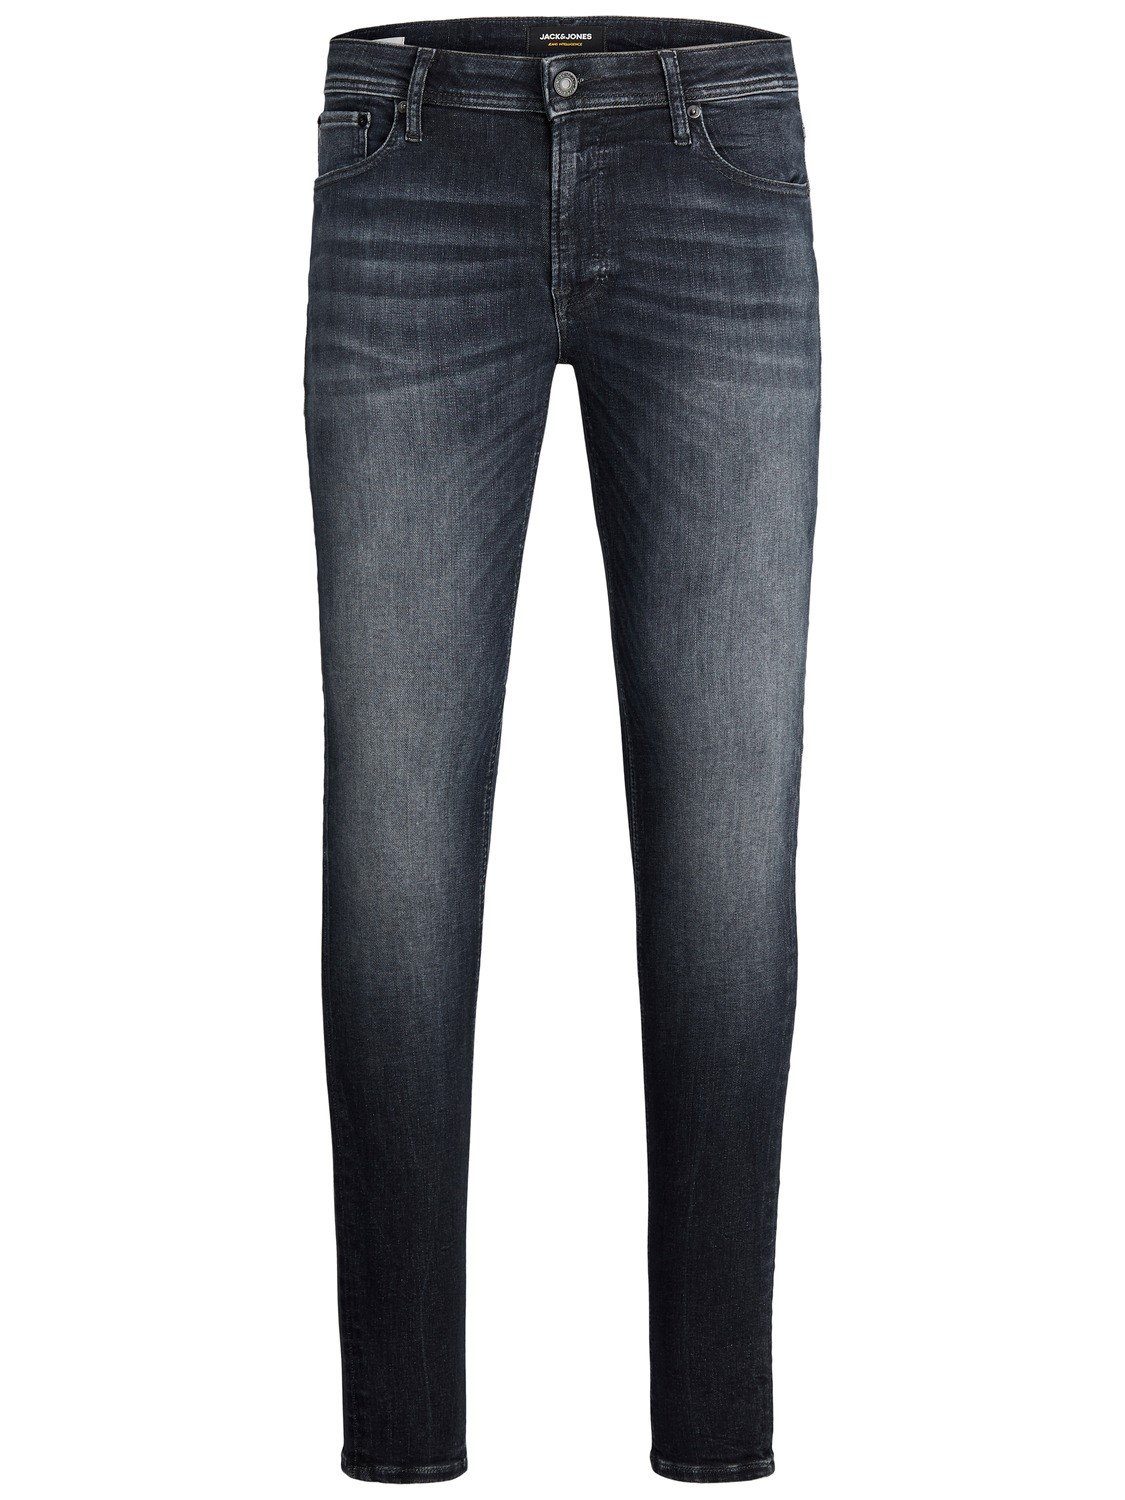 Jack & Jones Herren Skinny-Jeans online kaufen | OTTO